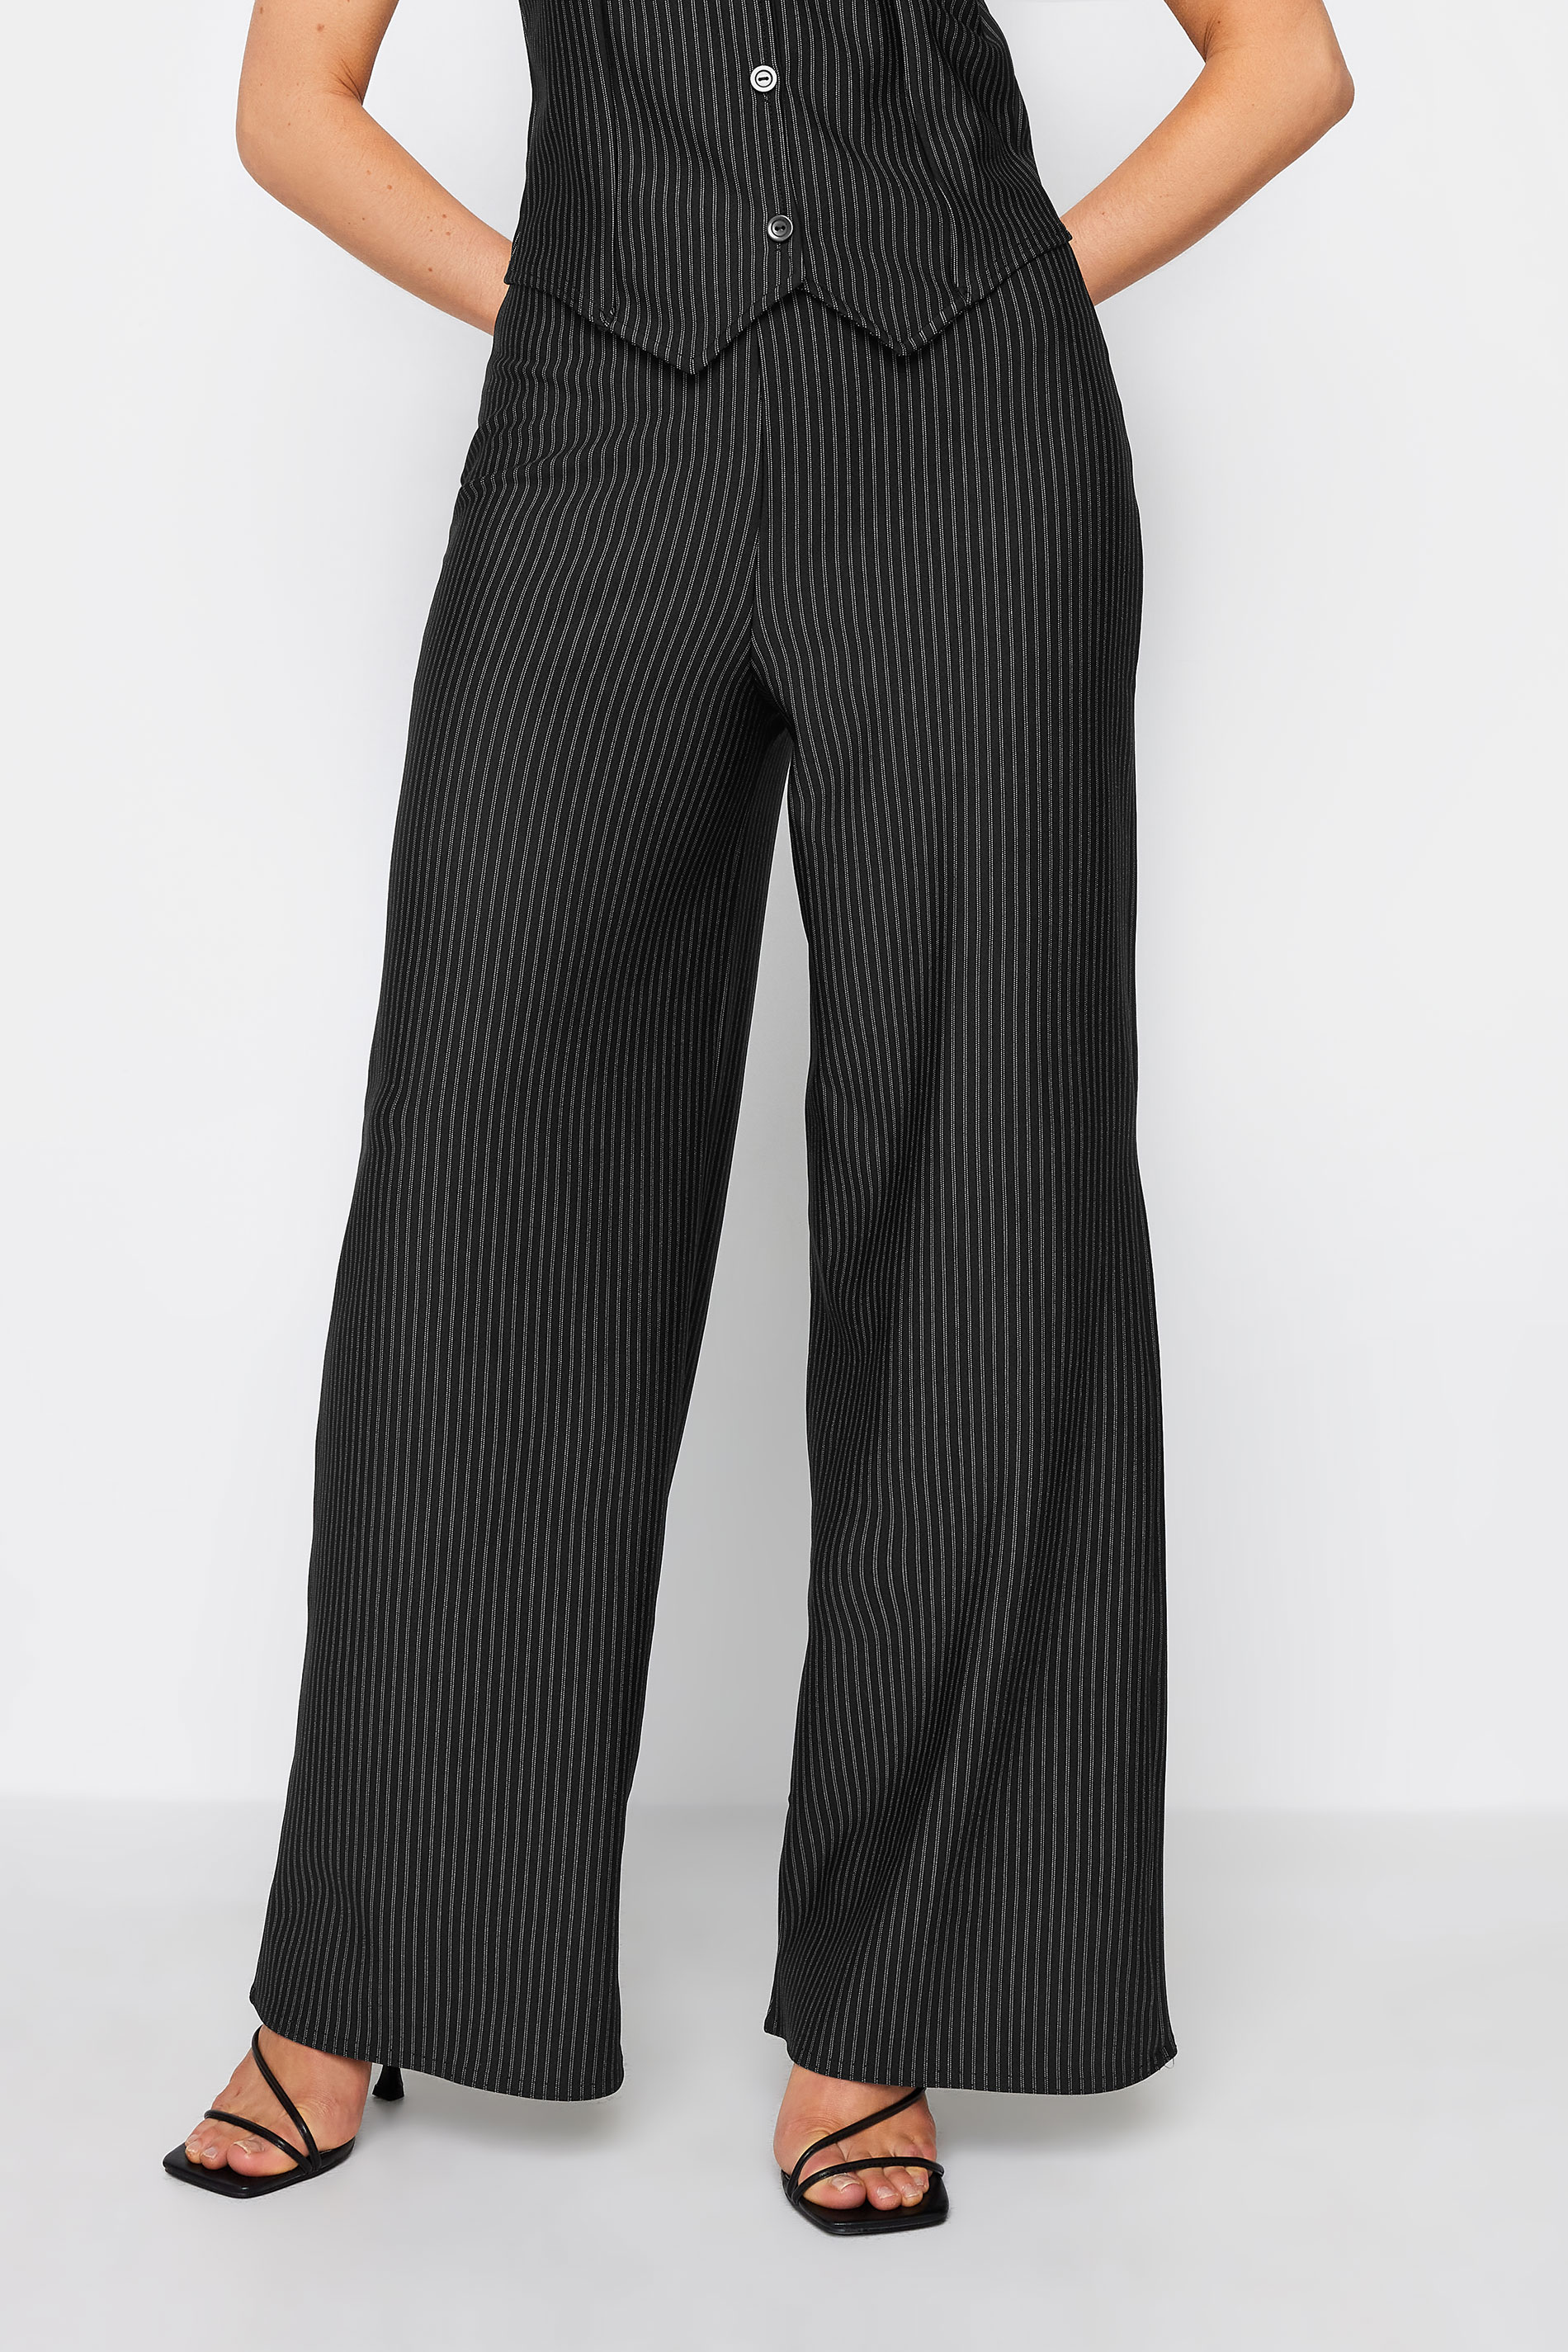 LTS Tall Black Pinstripe Wide Leg Trousers